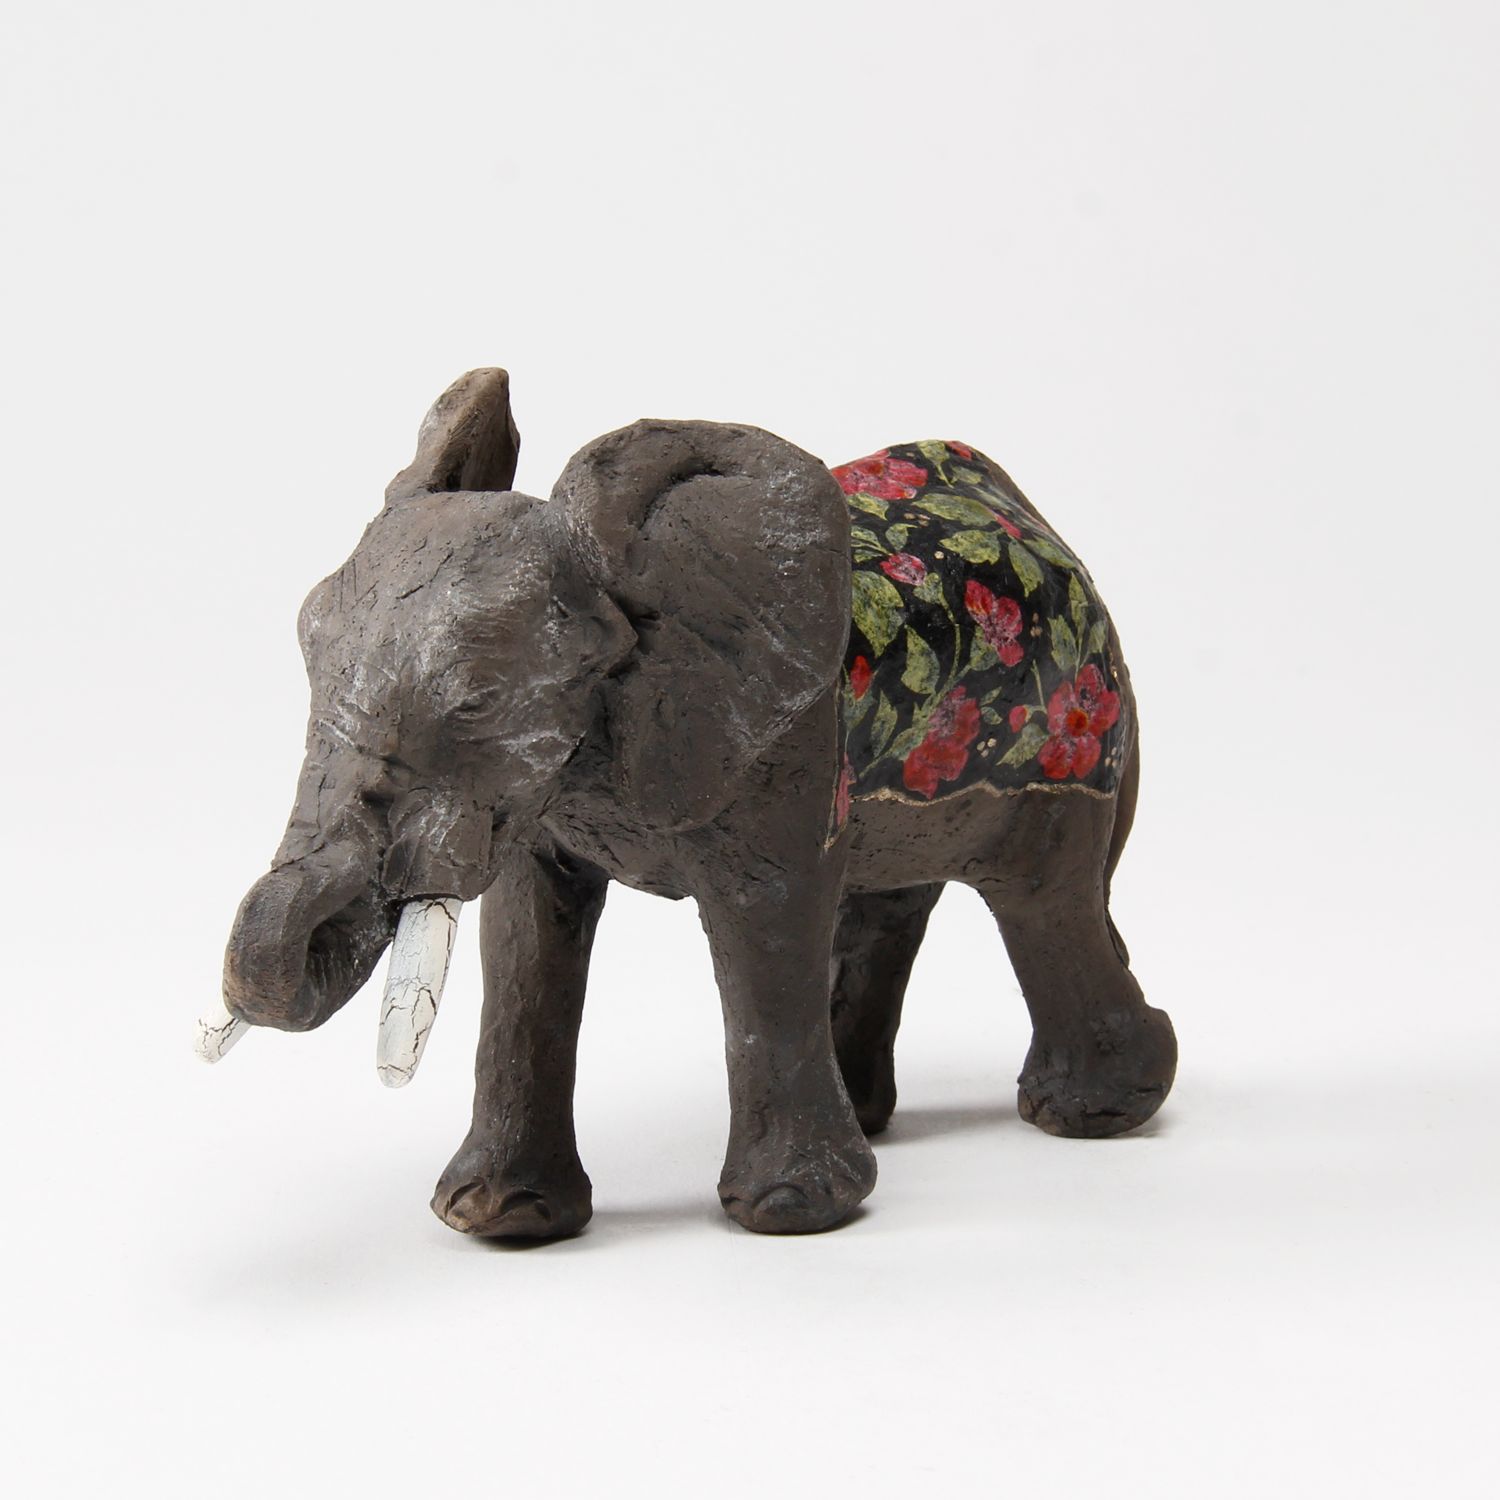 Zsuzsa Monostory: Elephant Product Image 1 of 3